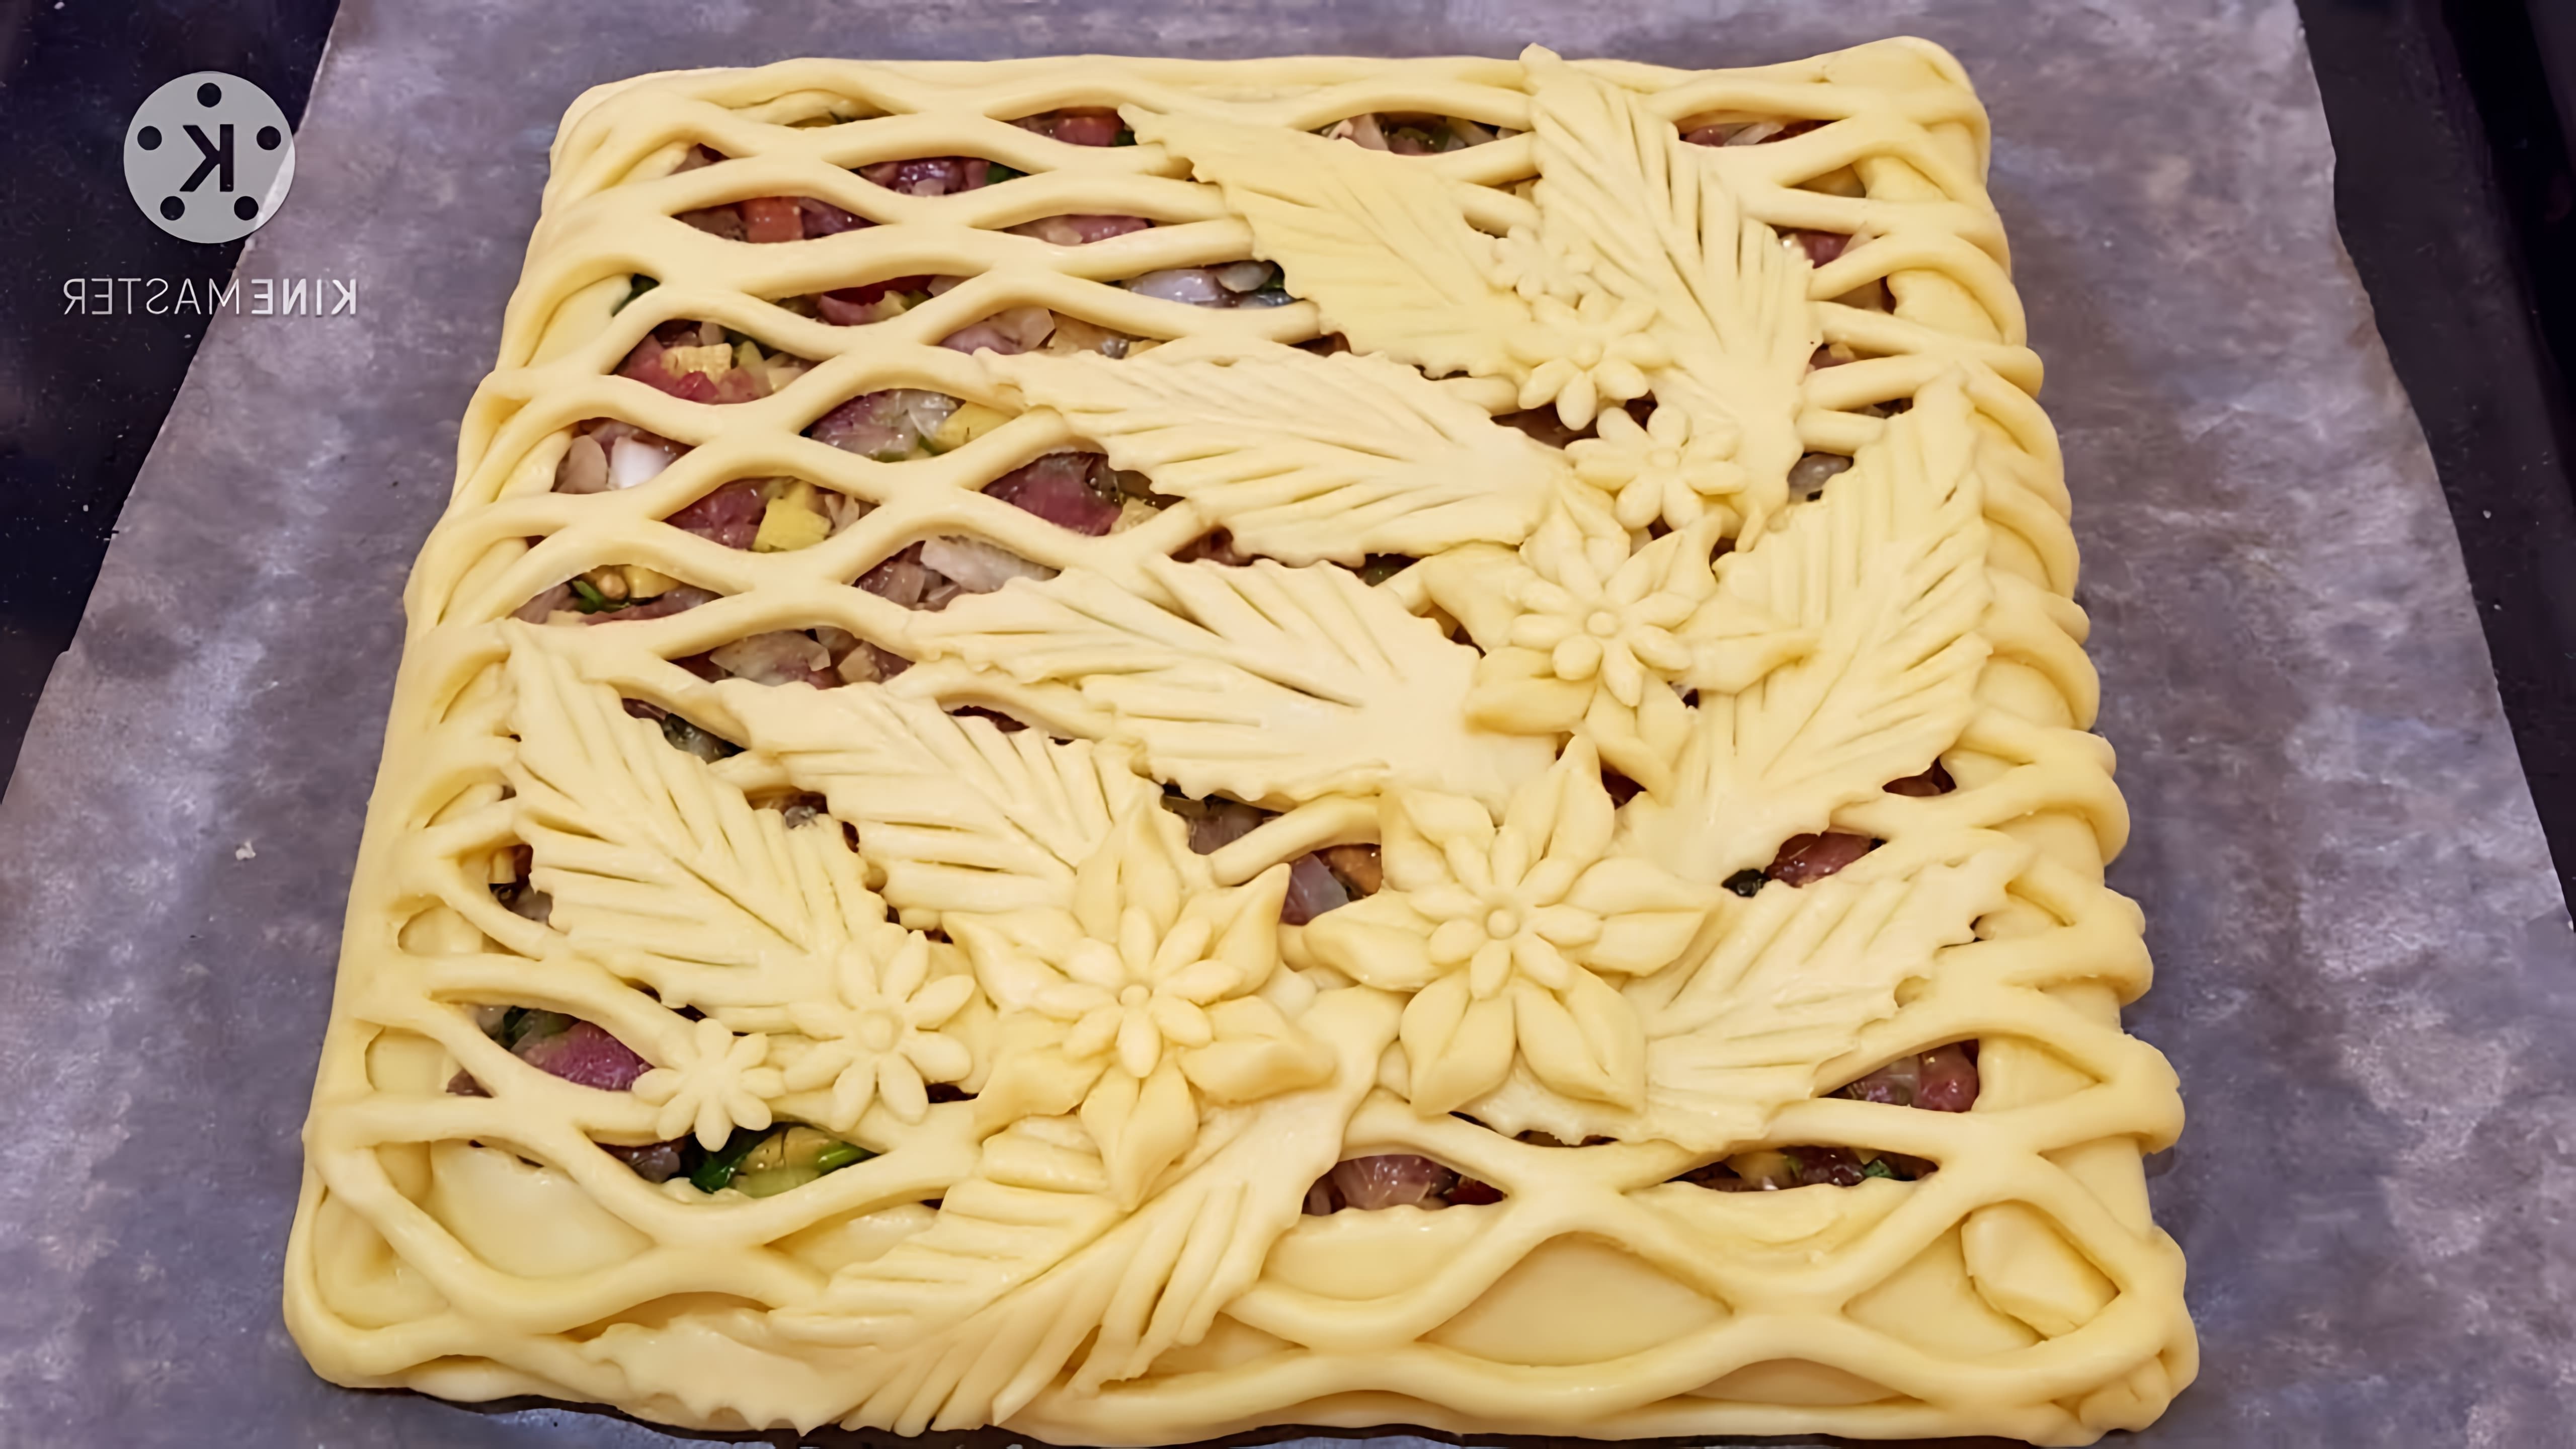 В данном видео демонстрируется процесс приготовления пирога из простых продуктов